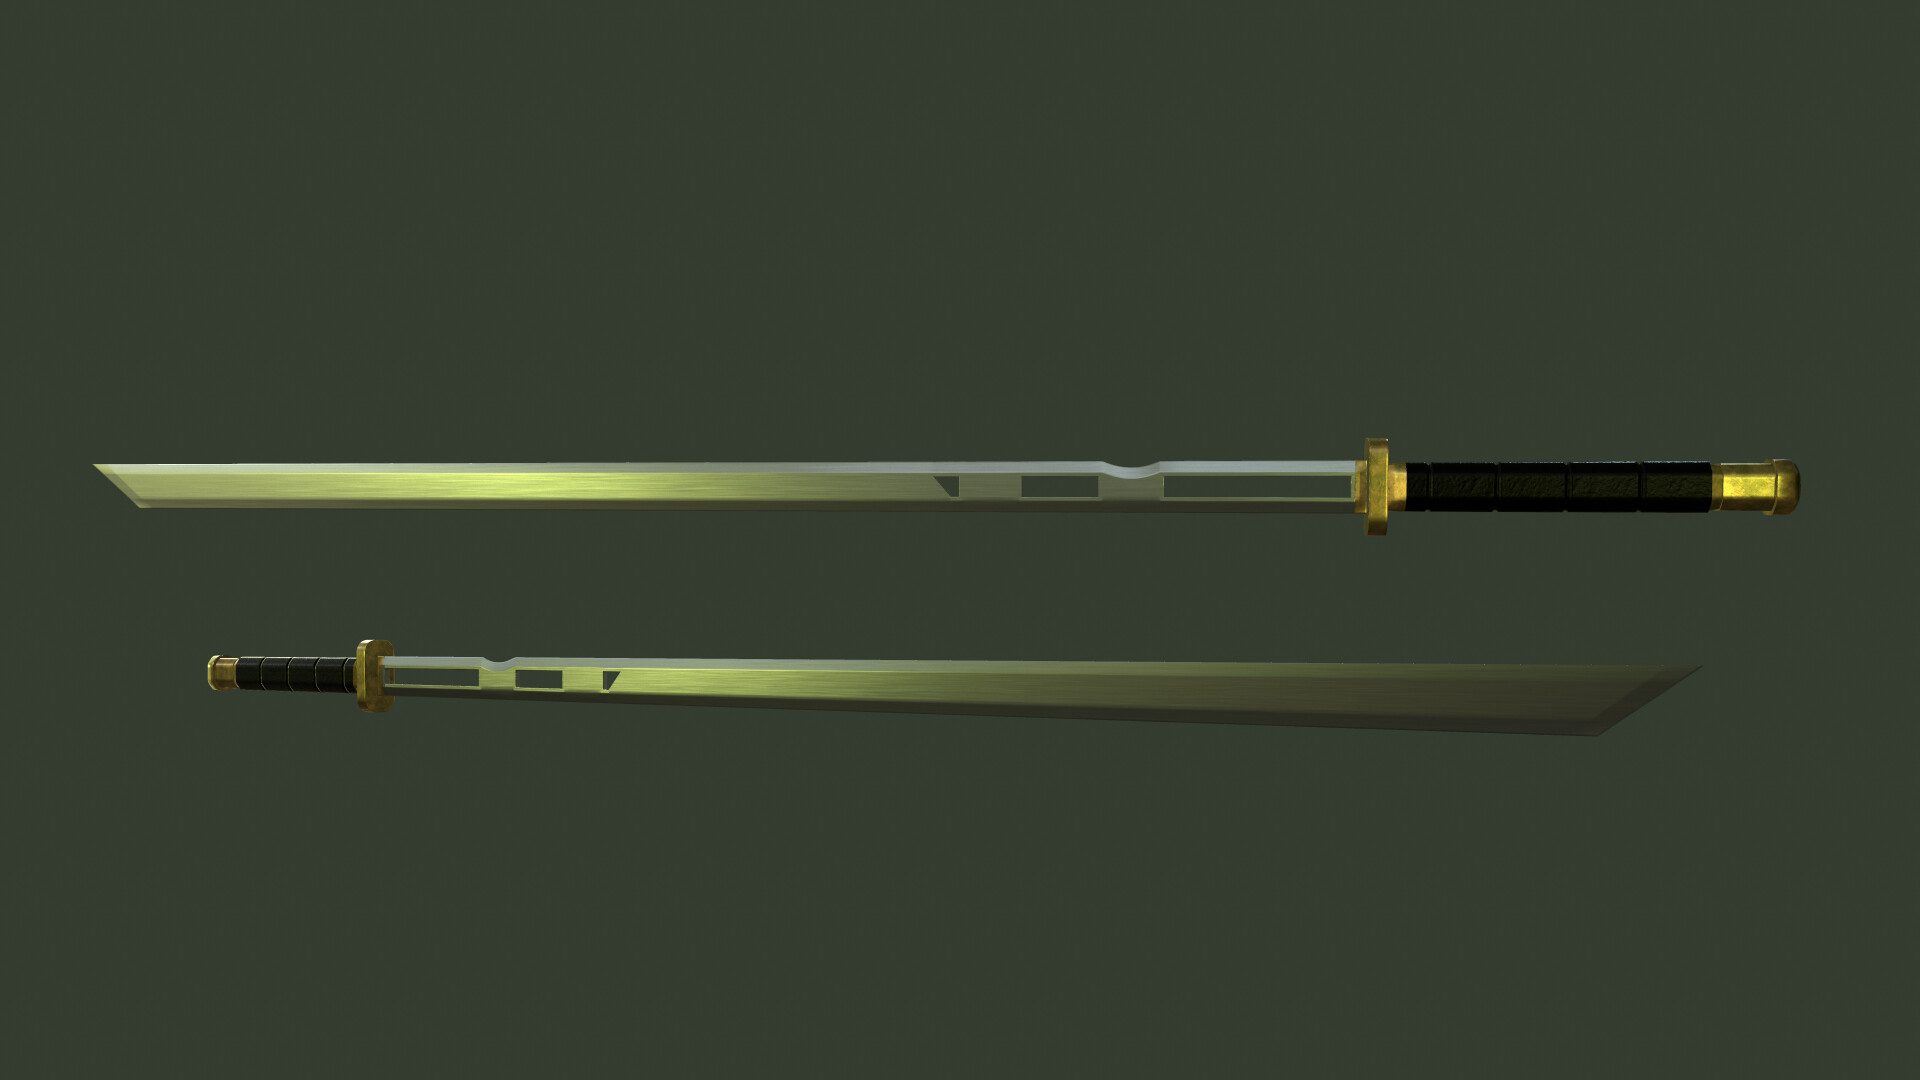 modern combat sword